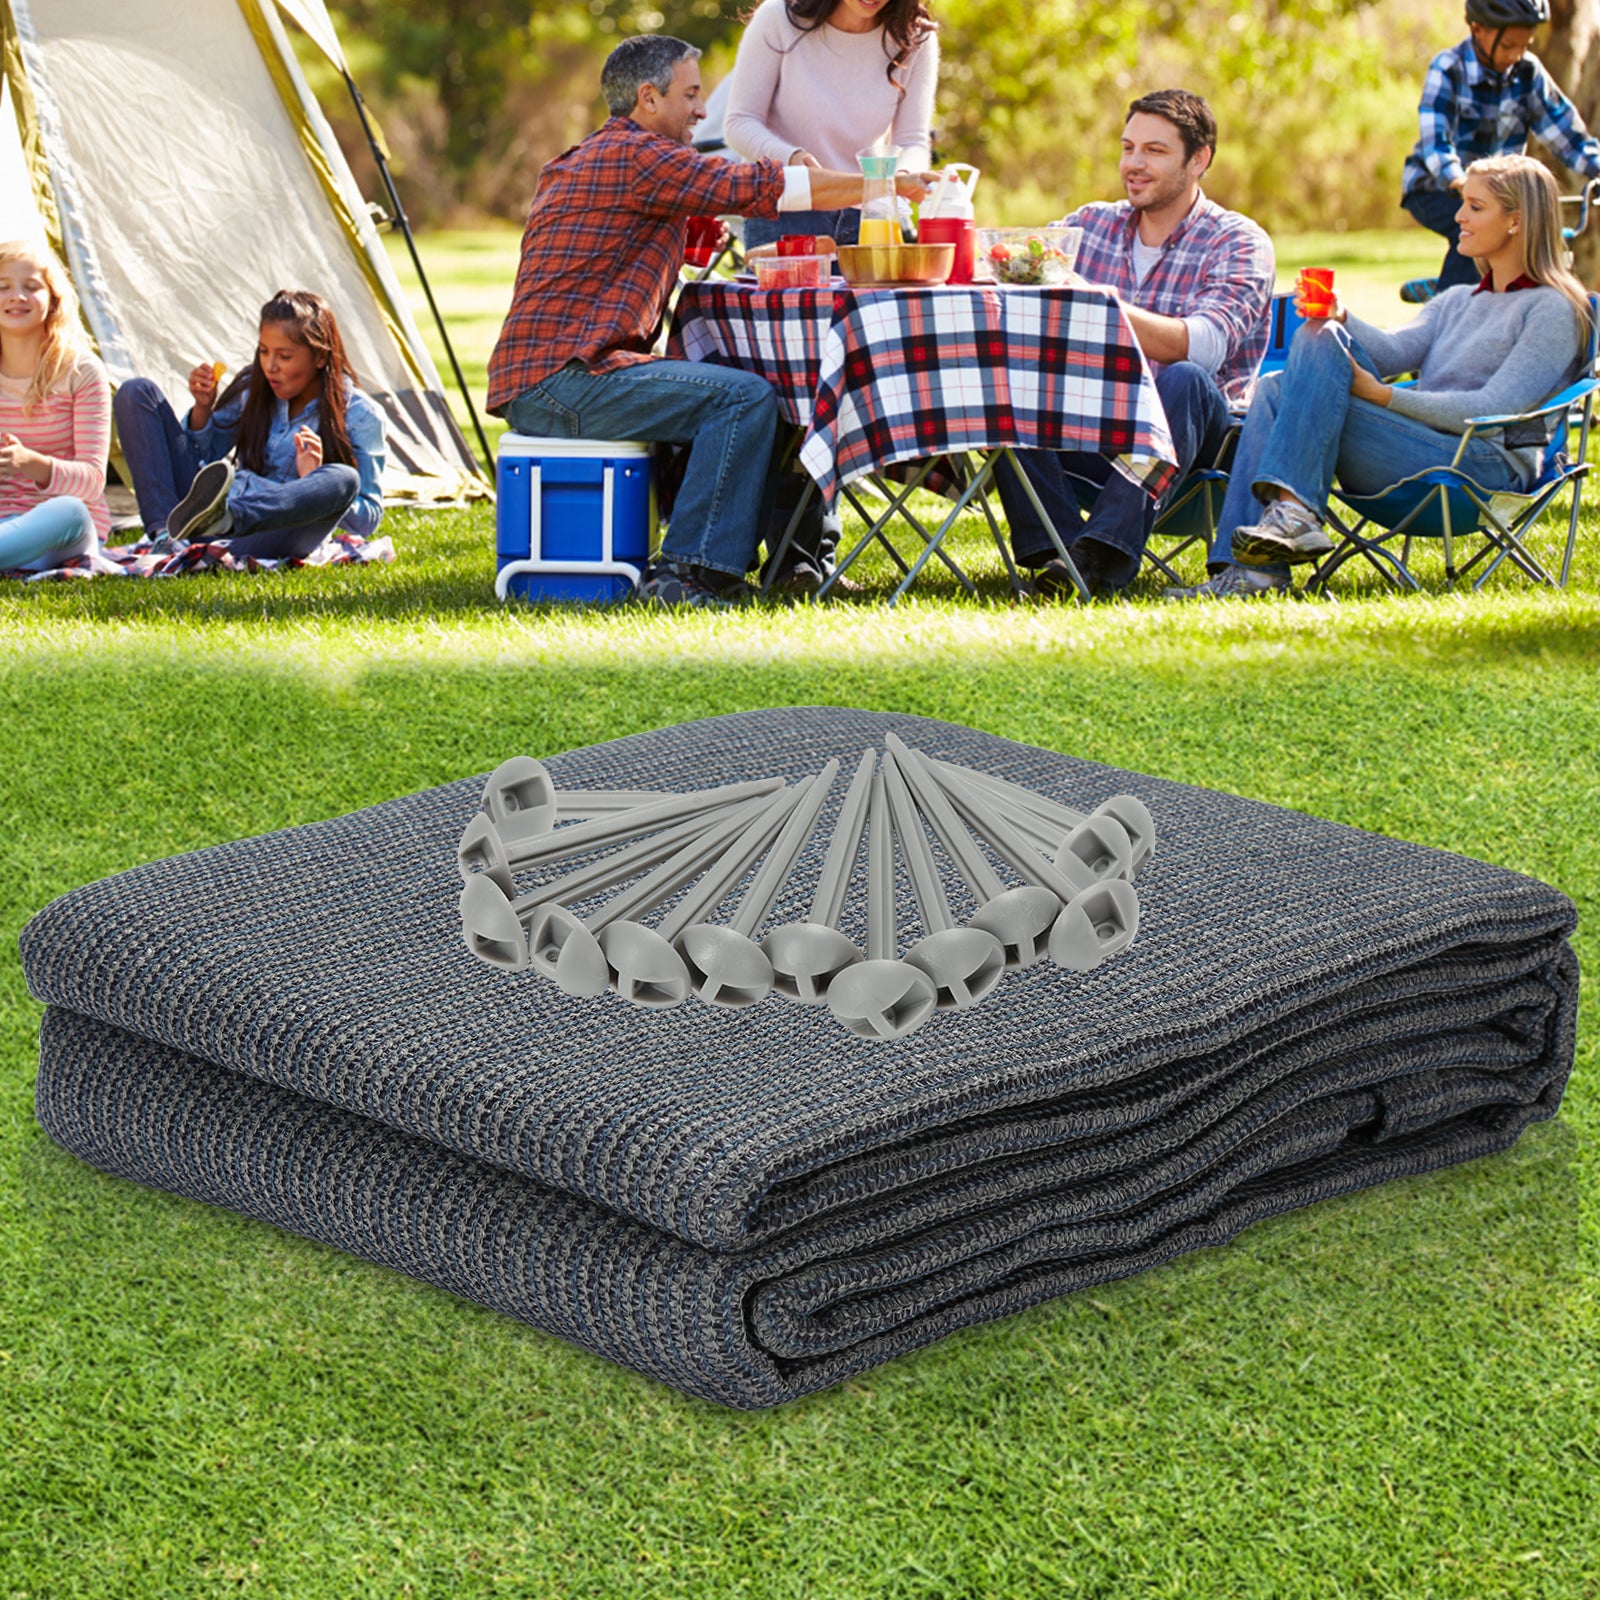 Comment choisir son tapis de sol et bâche de camping ?